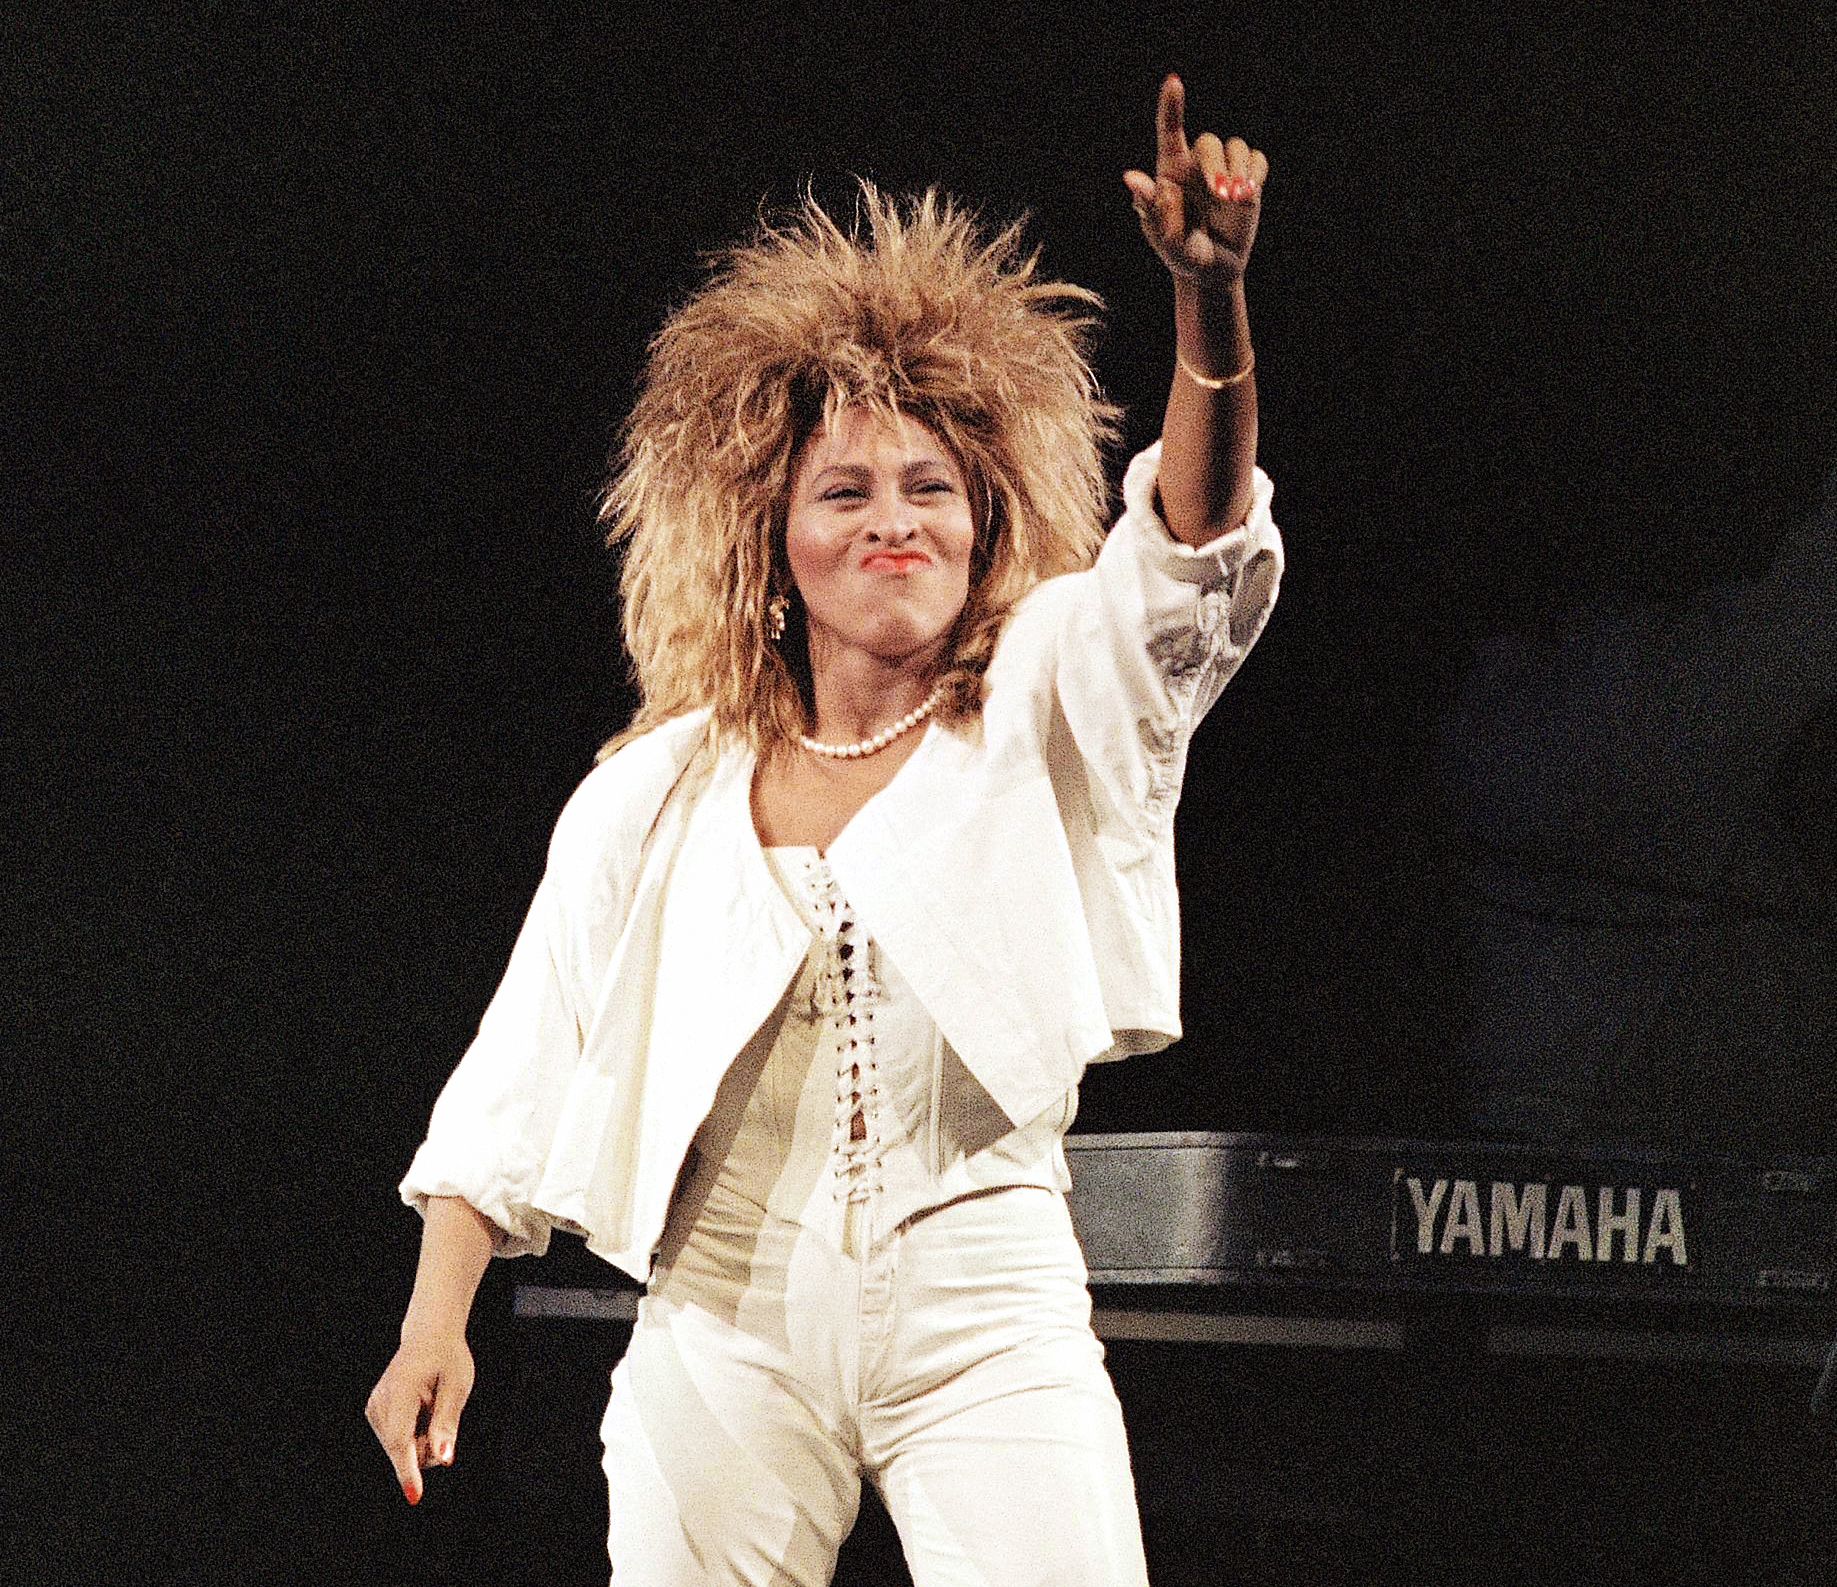 Tina Turner, proud queen of rock